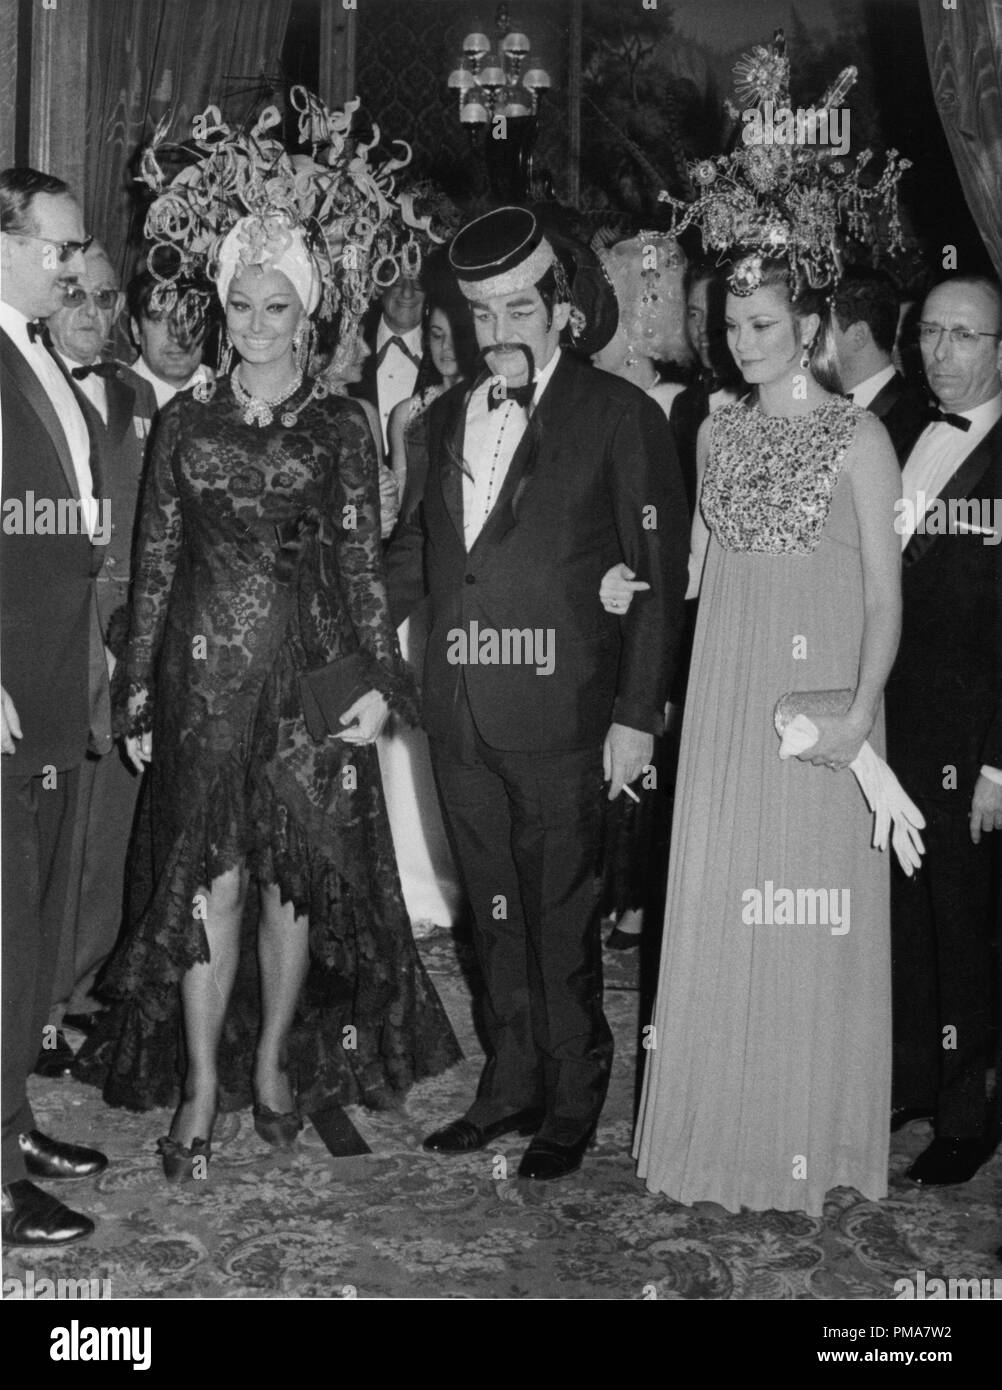 Sophia Loren, Prince Rainier and Princess Grace of Monaco at a masquerade ball in Monte Carlo, 1969  File Reference # 32263 824THA Stock Photo